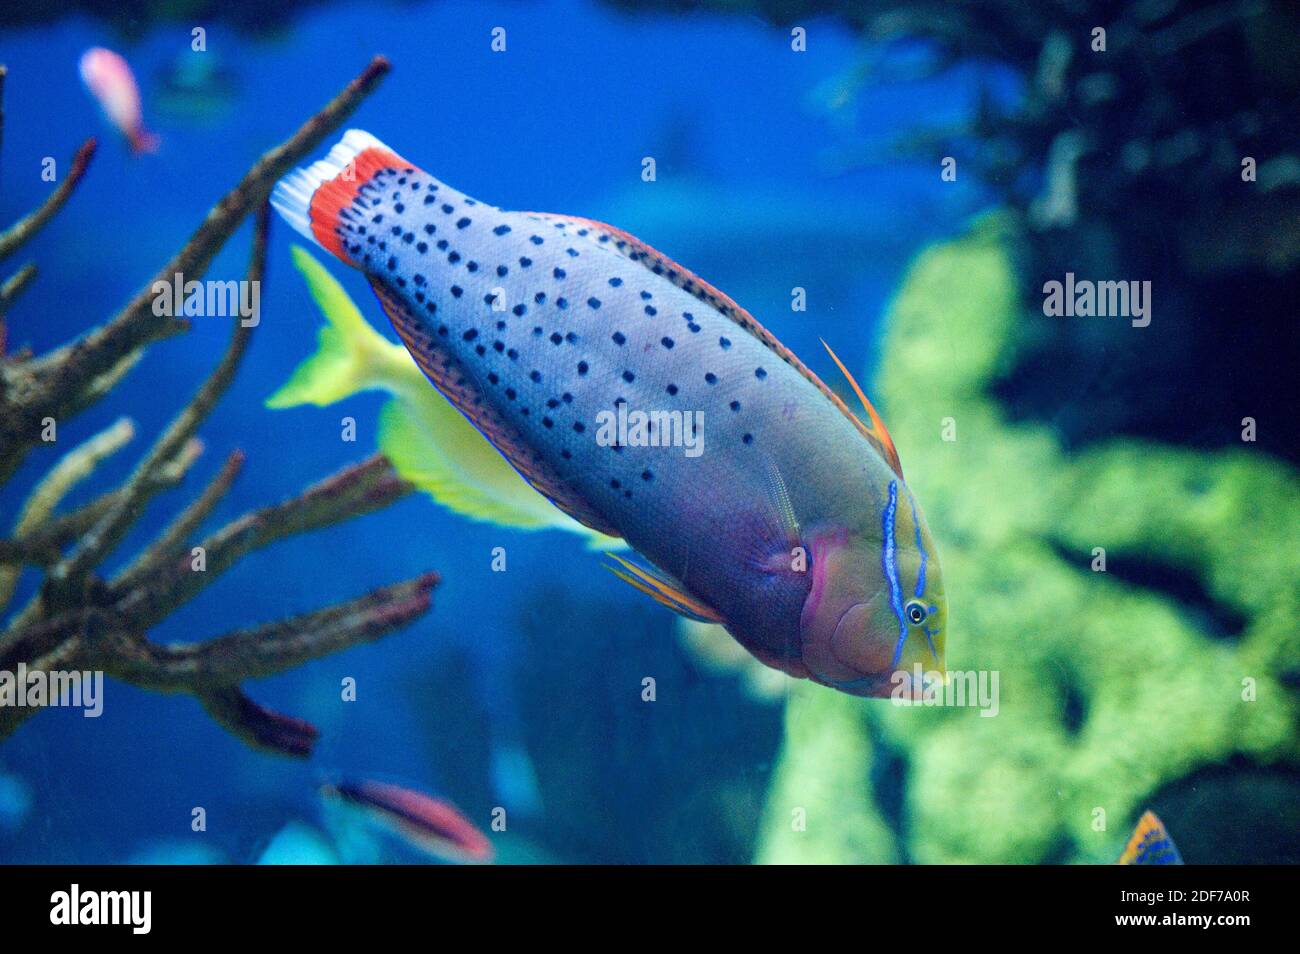 La reina coris o wrasse de Formosa (Coris formosa) es un pez marino nativo del océano Índico tropical. Espécimen adulto. Foto de stock